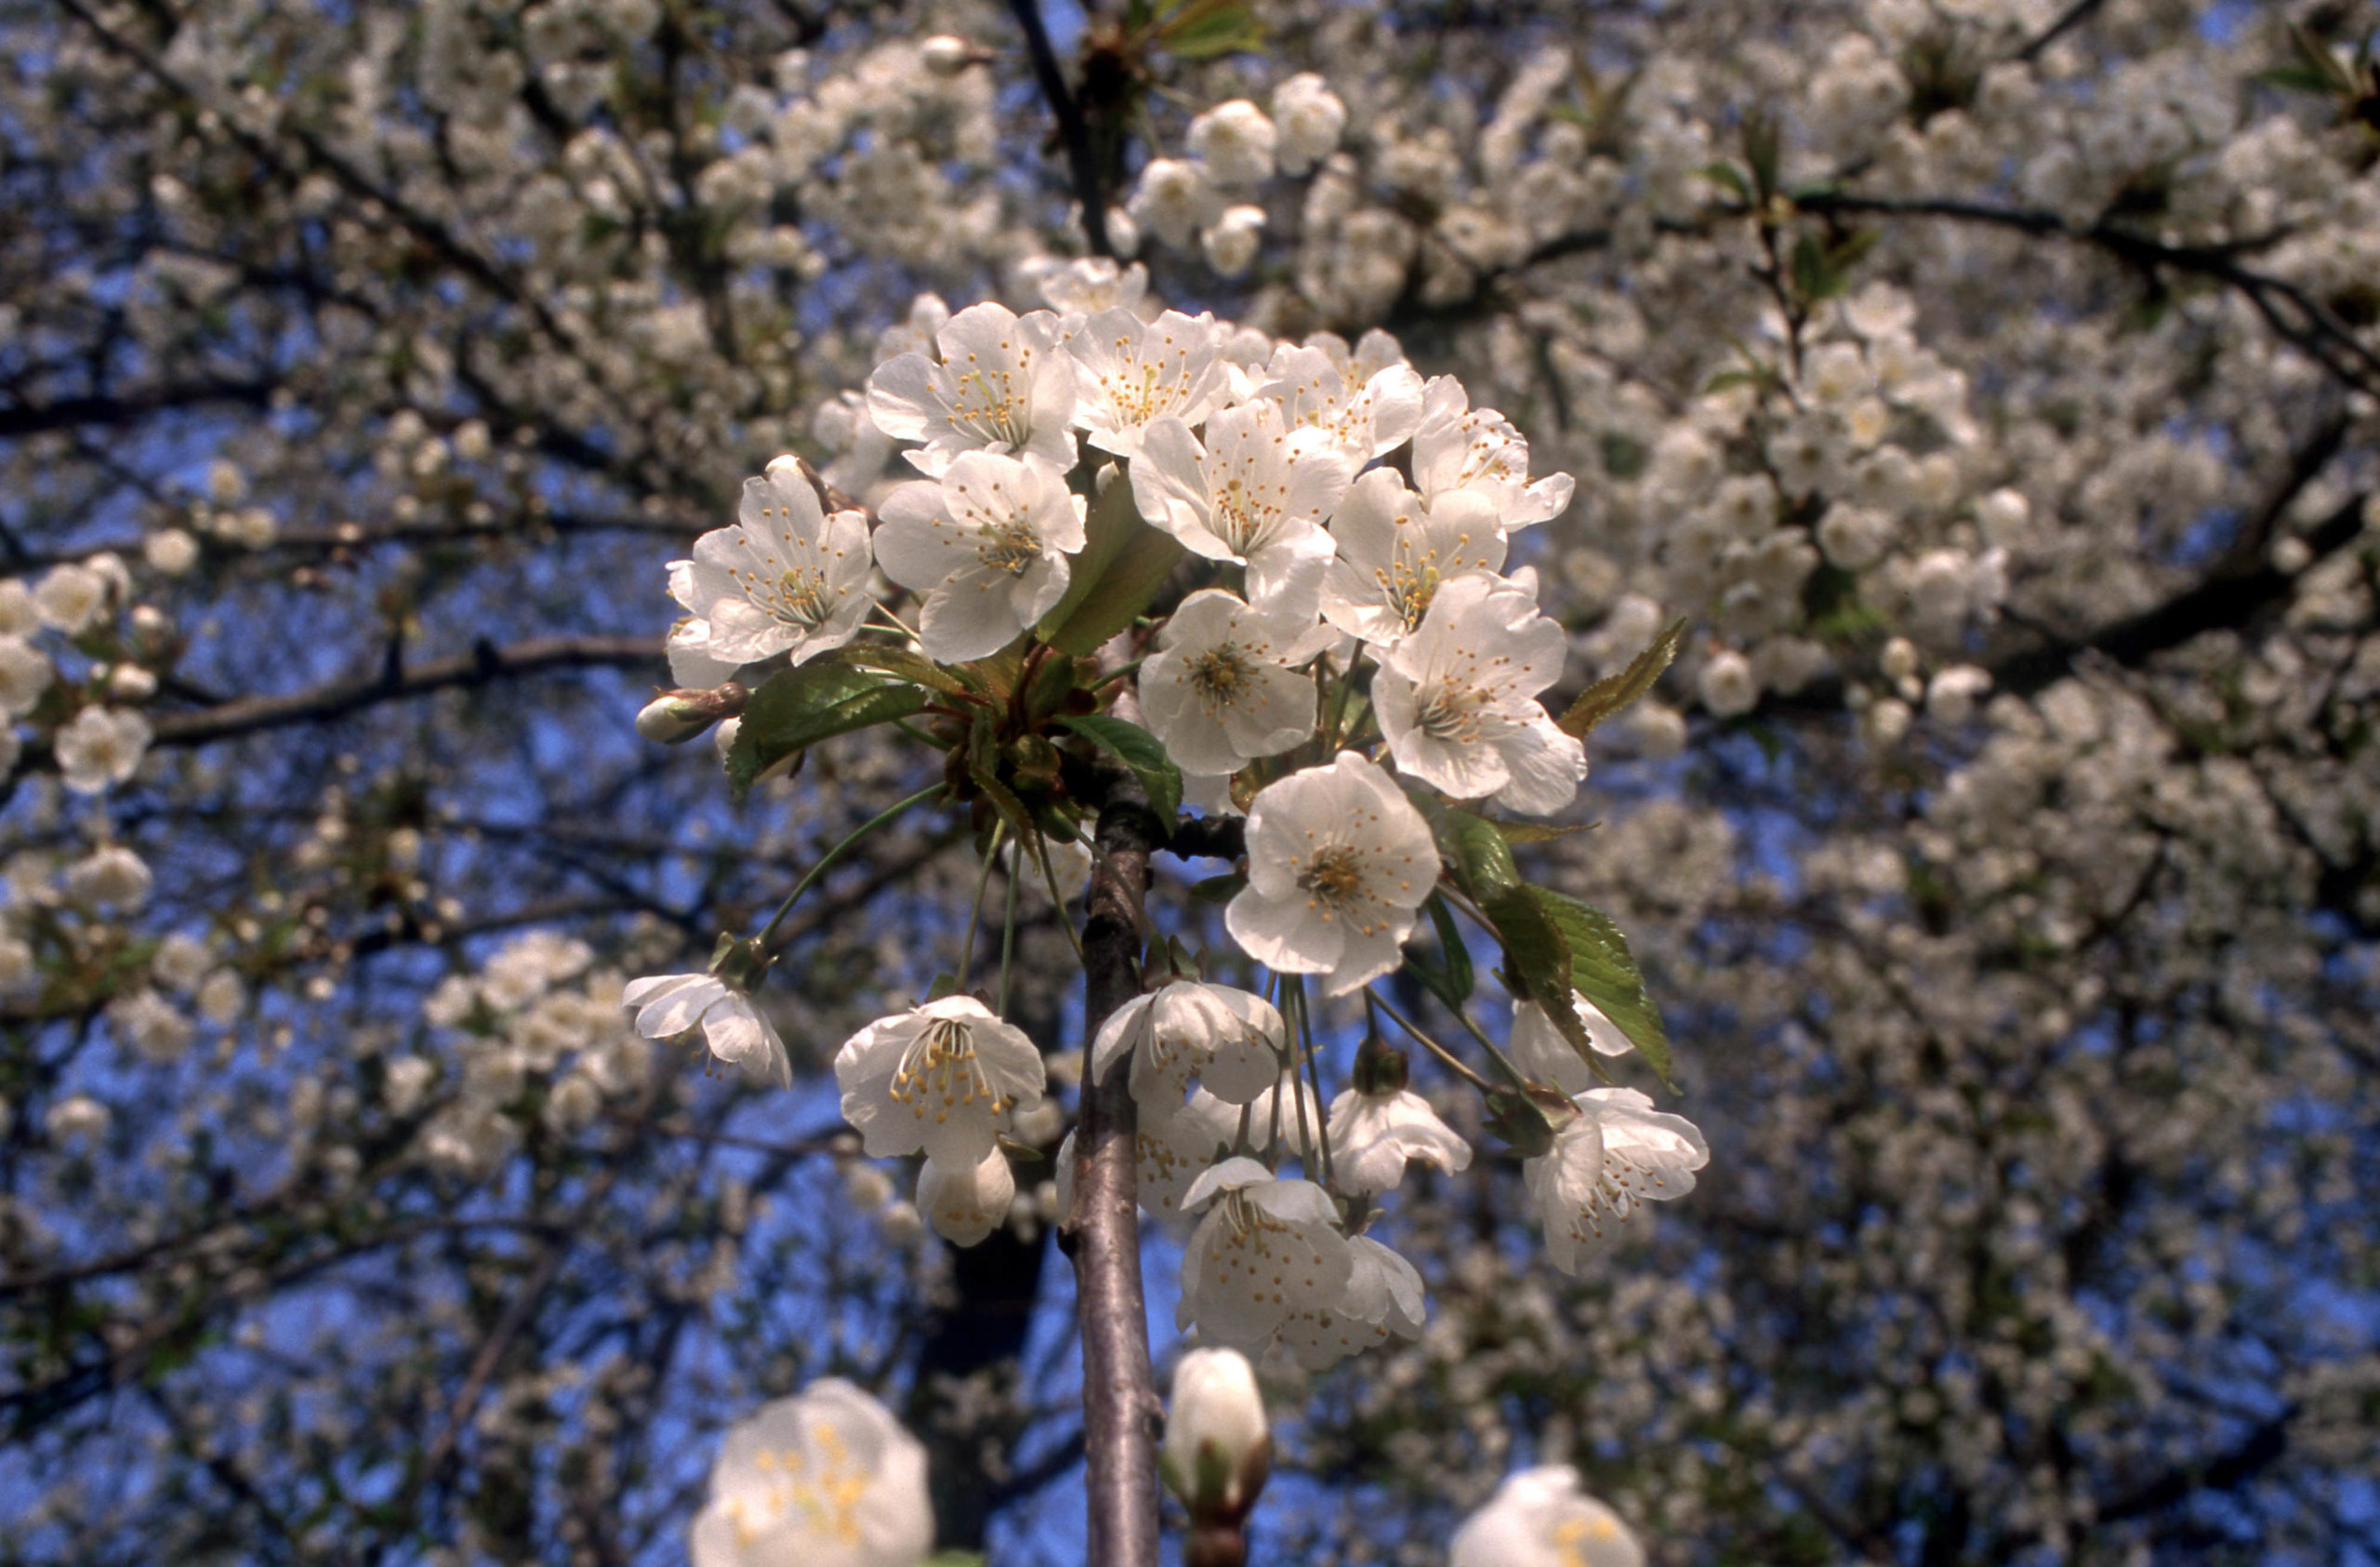 Zoete kers of Boskriek - Prunus avium : Los stuk wortelgoed